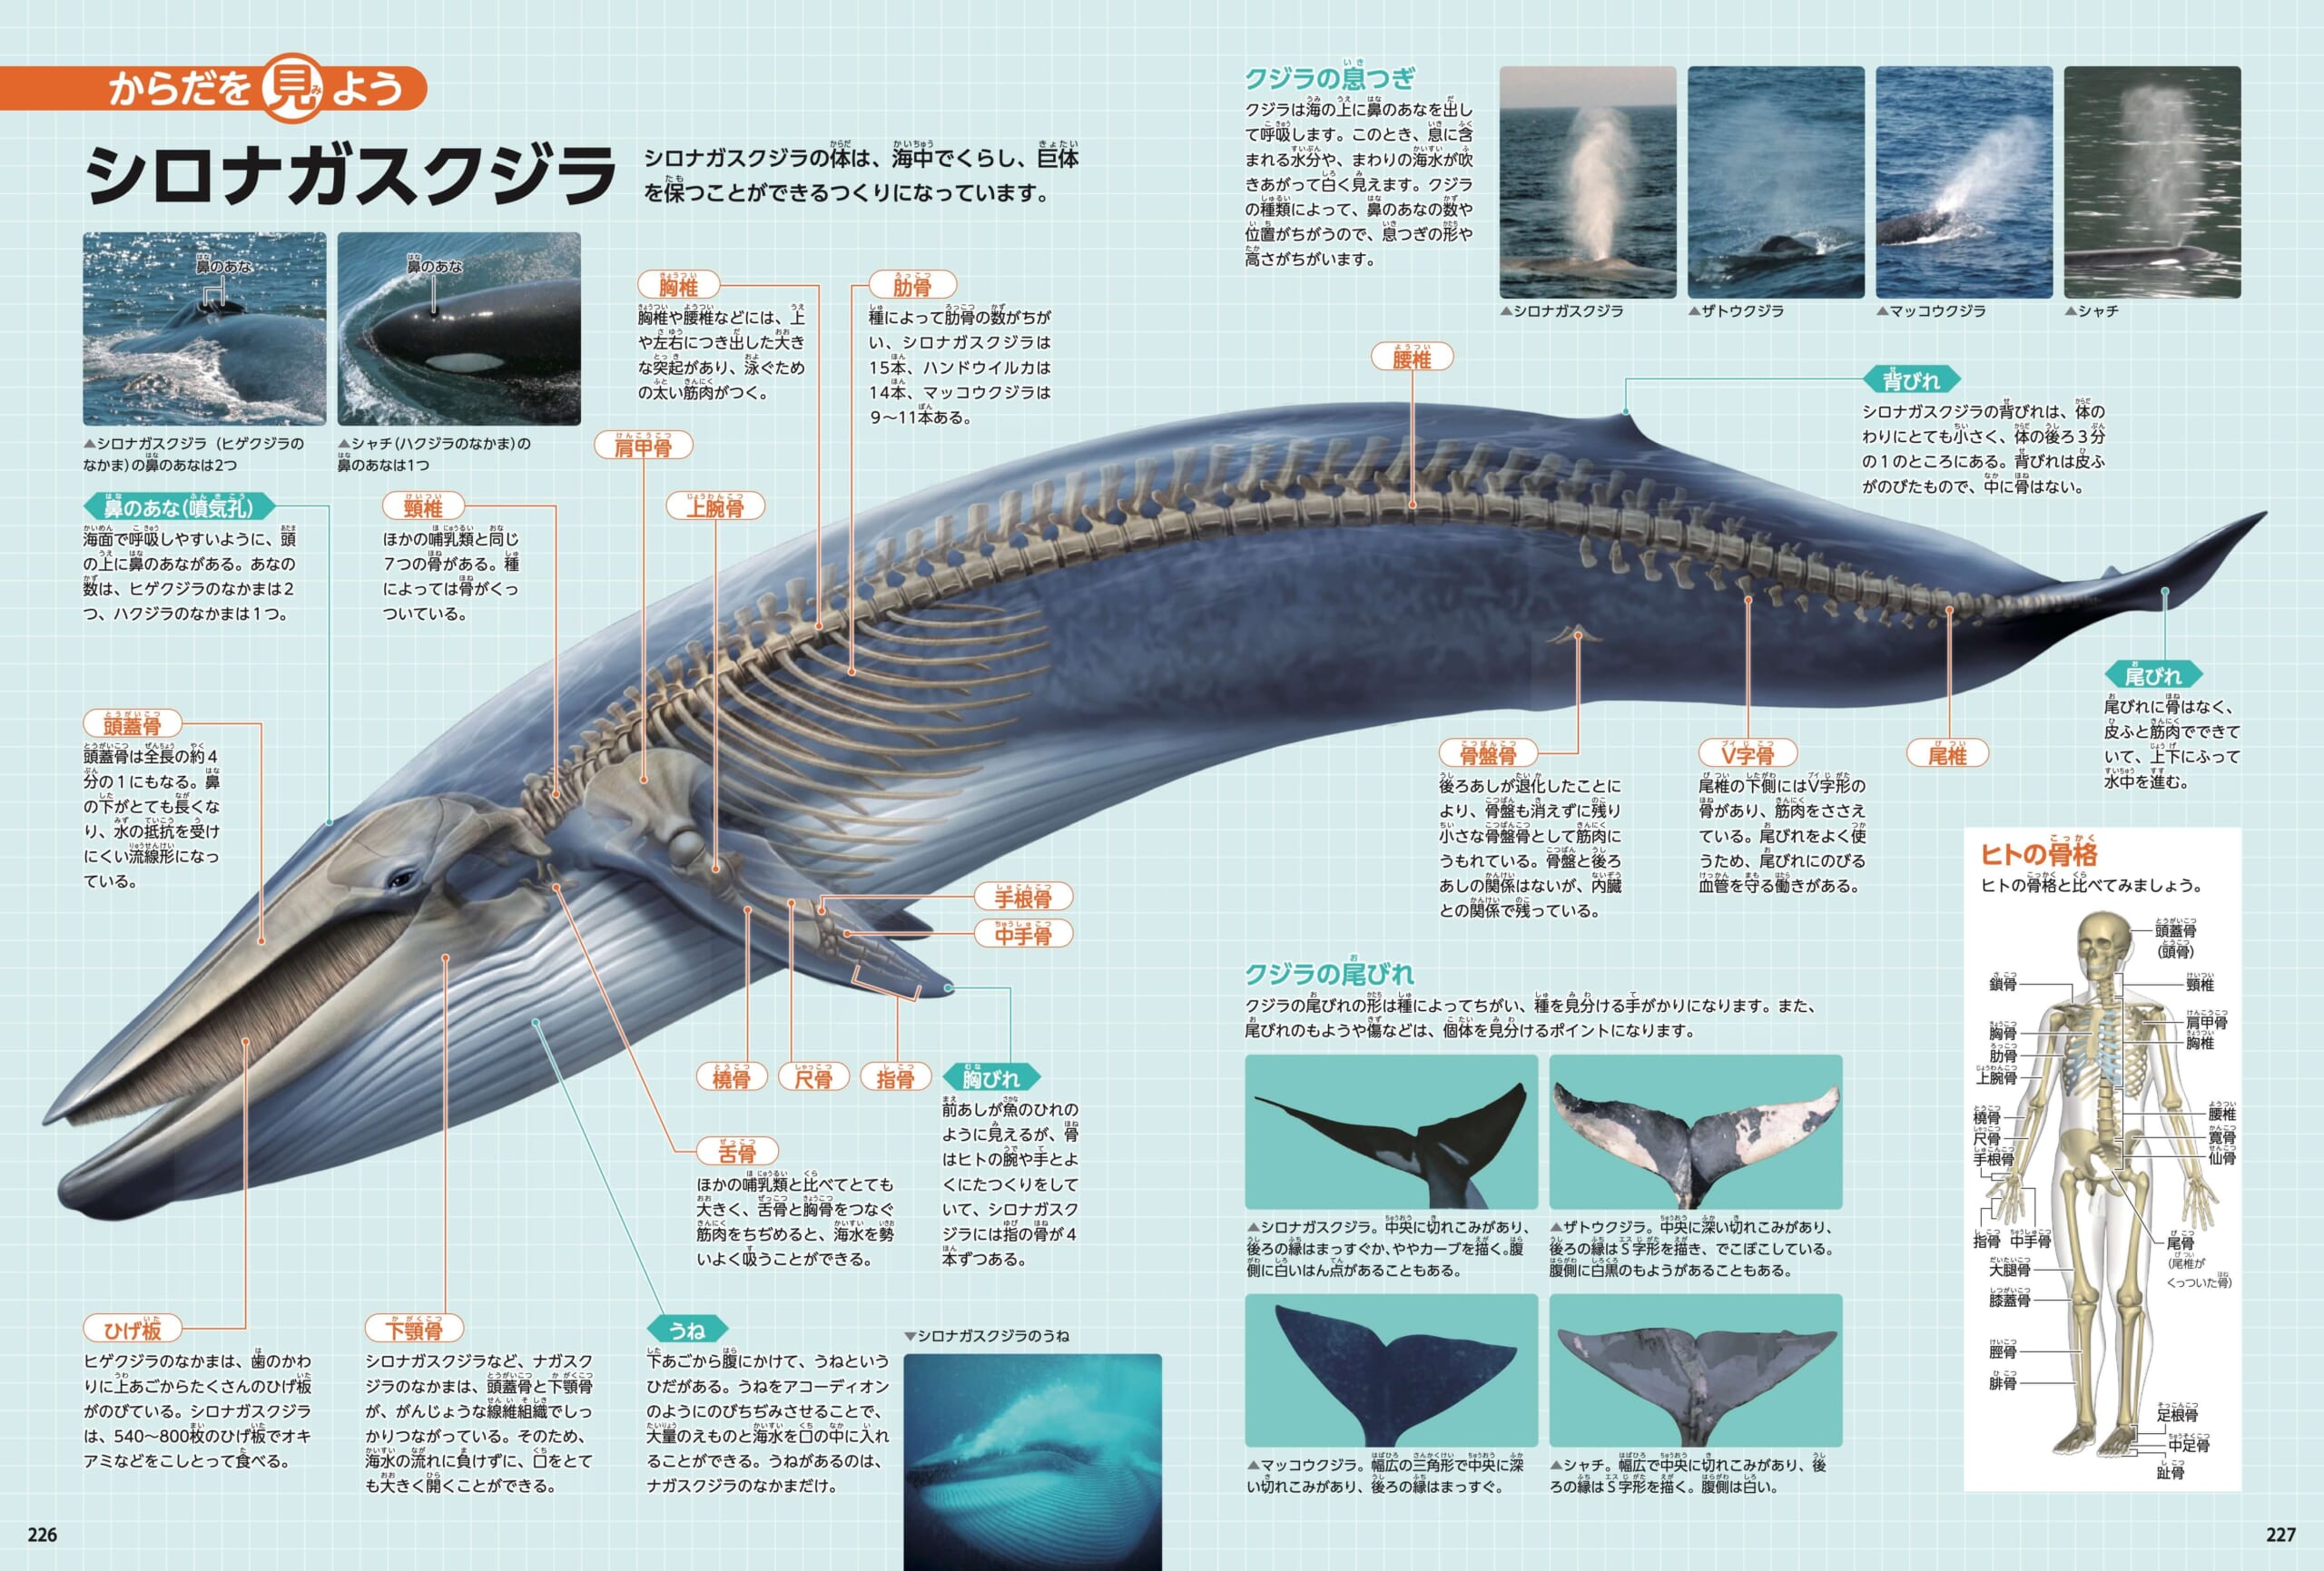 「からだを見よう」のページより。クジラの体の中って、どうなっているの？　紙面